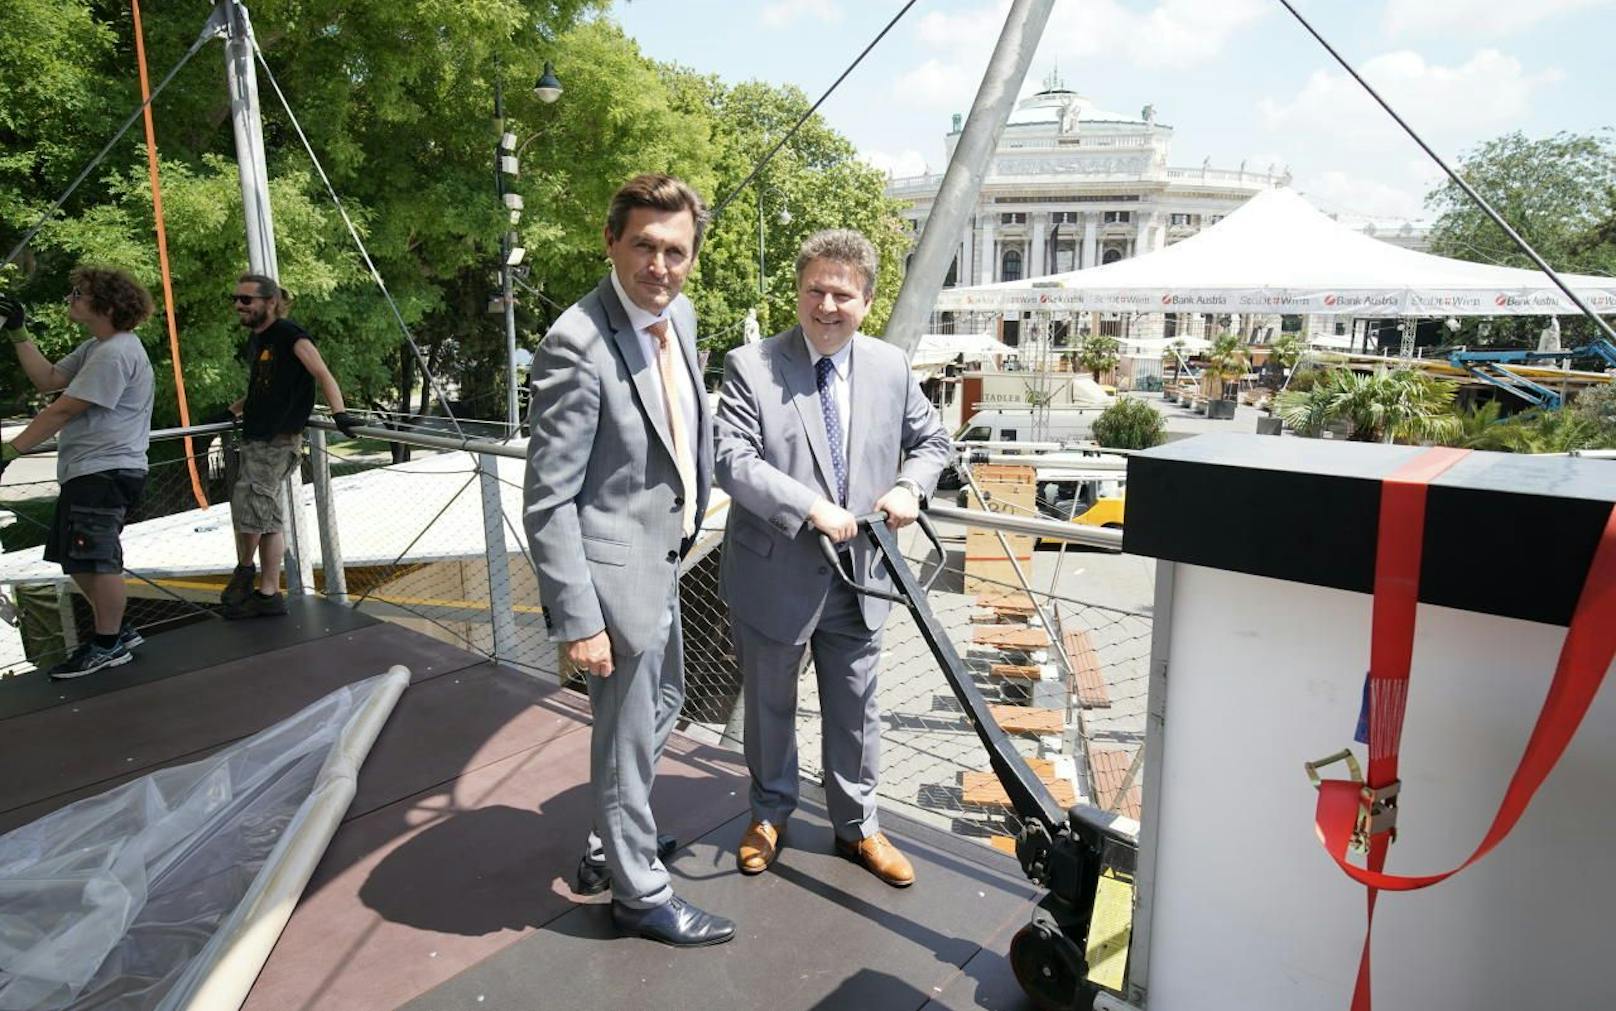 Am Samstag startet das Filmfestival am Wiener Rathausplatz. Wirtschaftsstadtrat Peter Hanke (li.) und Stadtchef Michael Ludwig (beide SPÖ) schauten bei den Aufbauarbeiten vorbei.                               